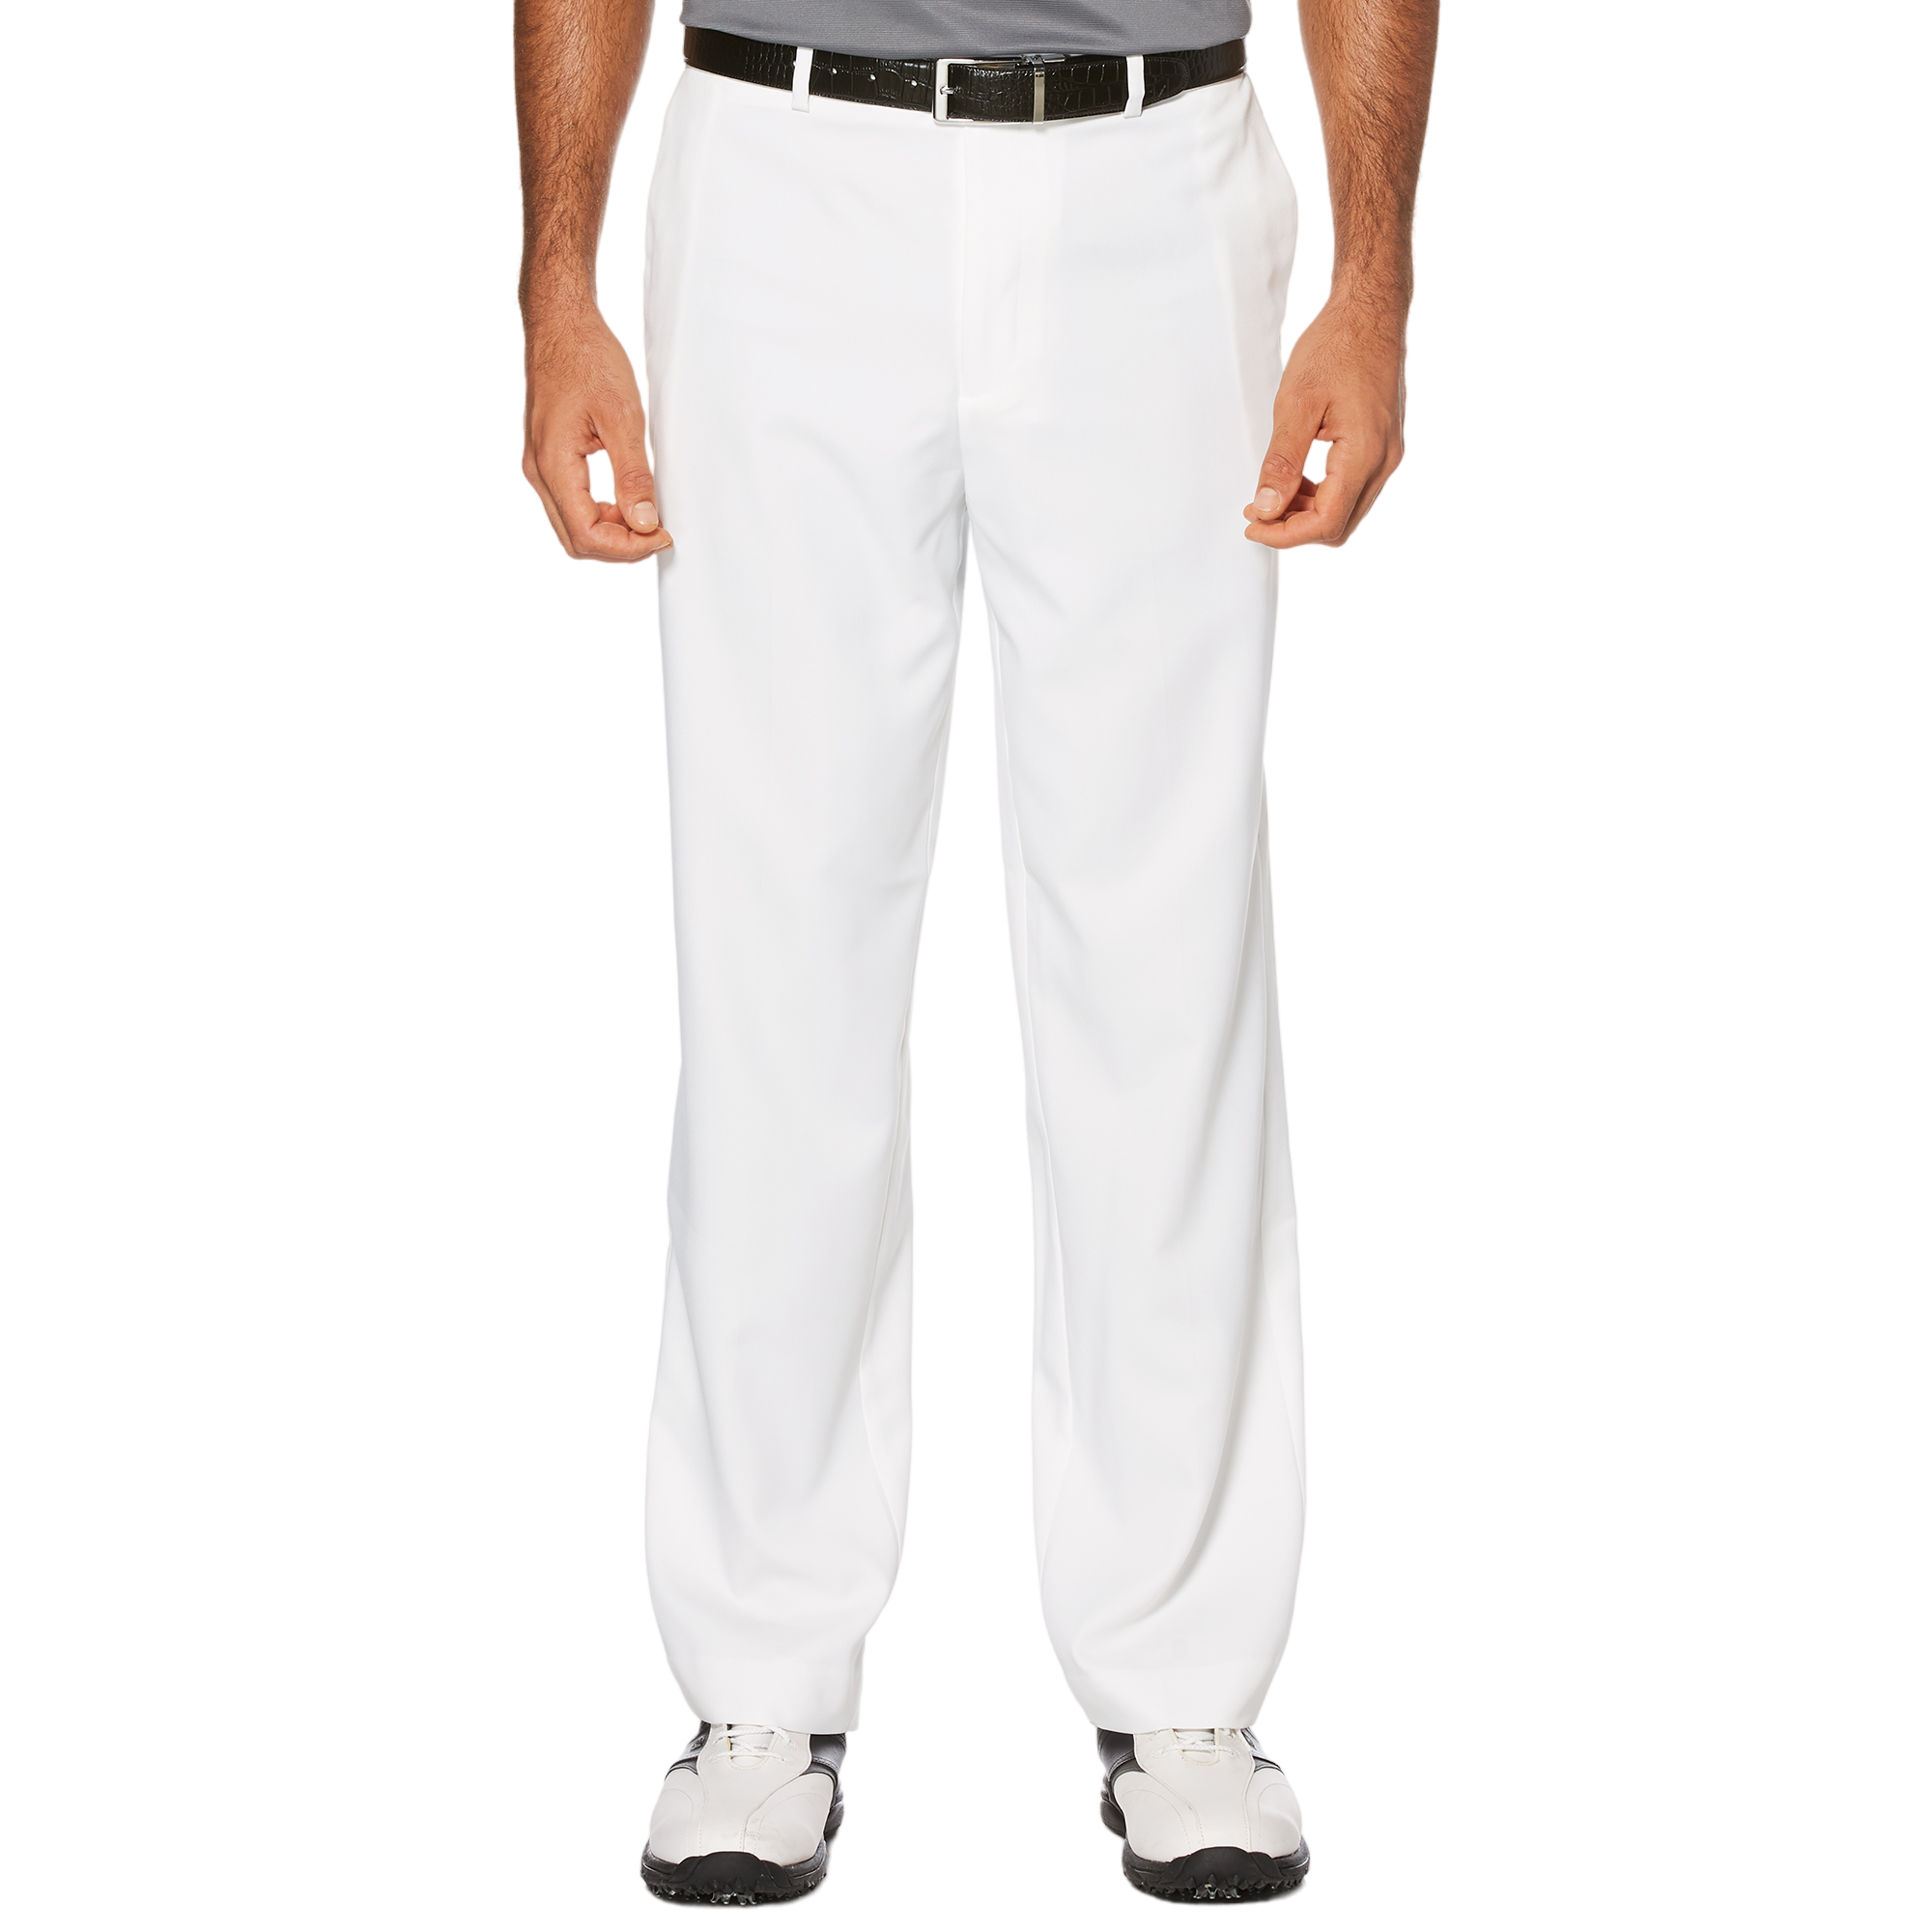 PGA TOUR Extender Comfort Flat Front Pant